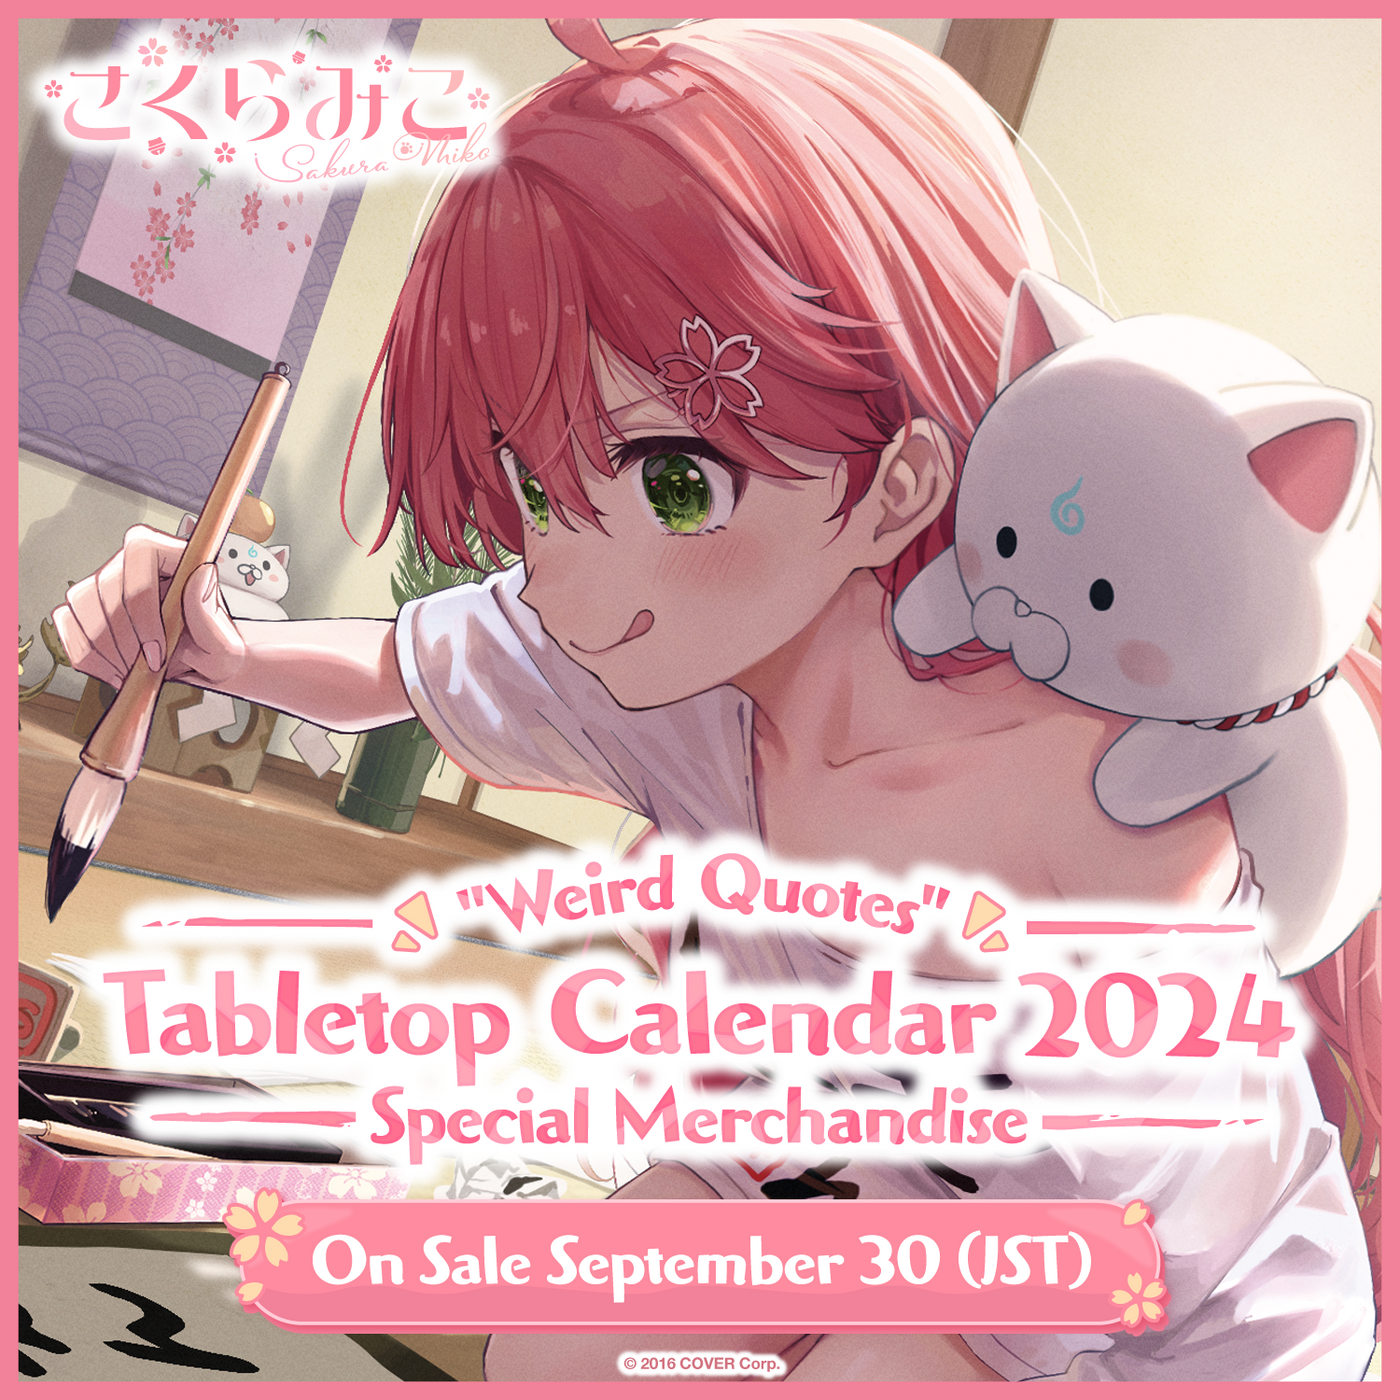 [Pre-order] Sakura Miko "Weird Quotes" Tabletop Calendar 2024 Special Merchandise